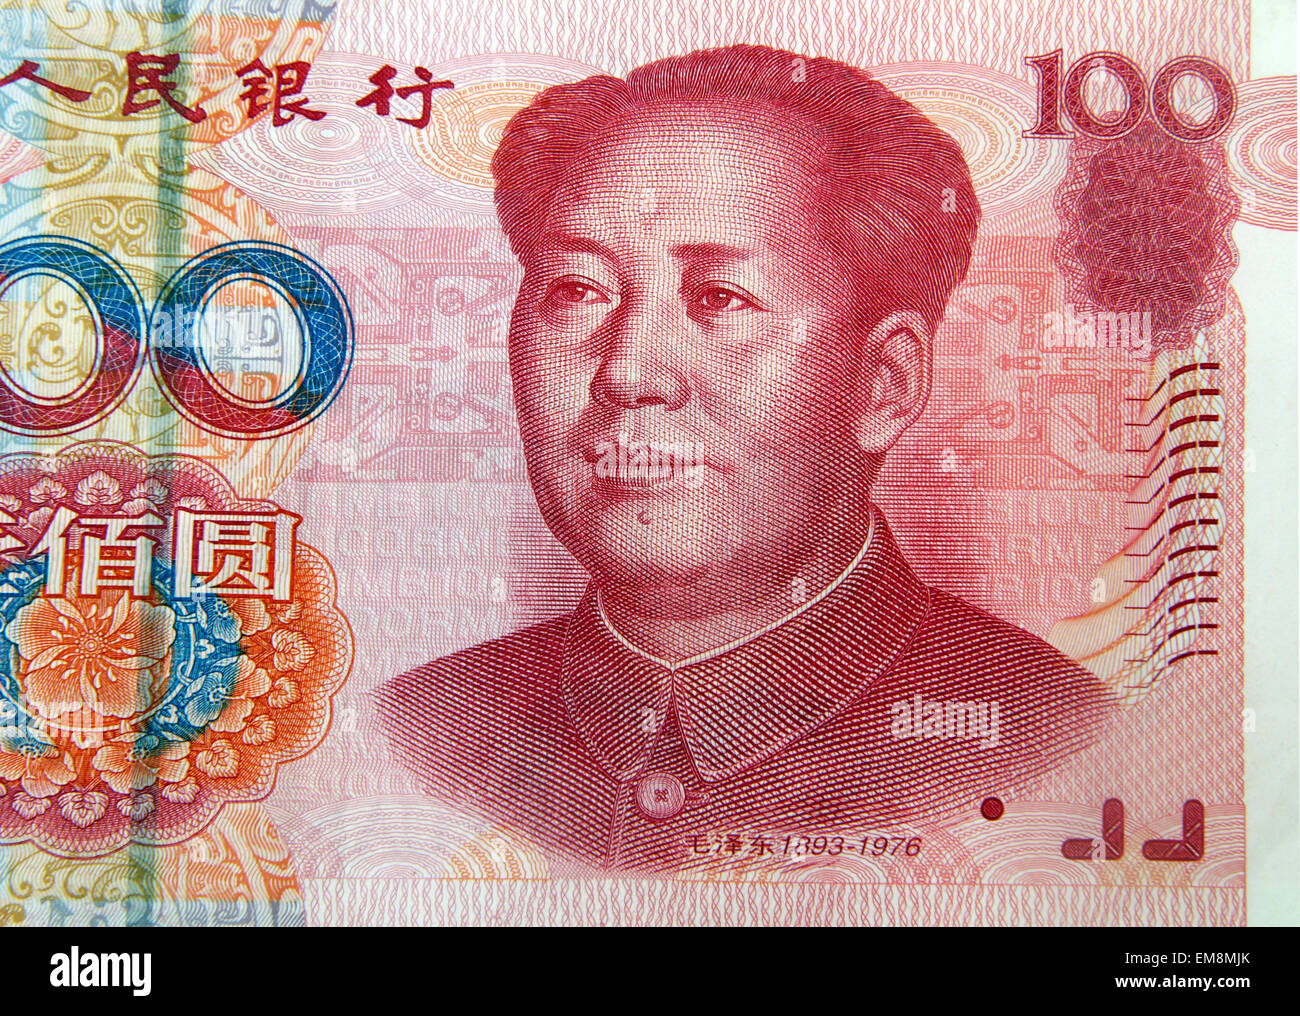 Chinesische Banknote 100 Renminbi Yuan Vorderseite zeigt Mao Zedong und Prunus Mume Stockfoto